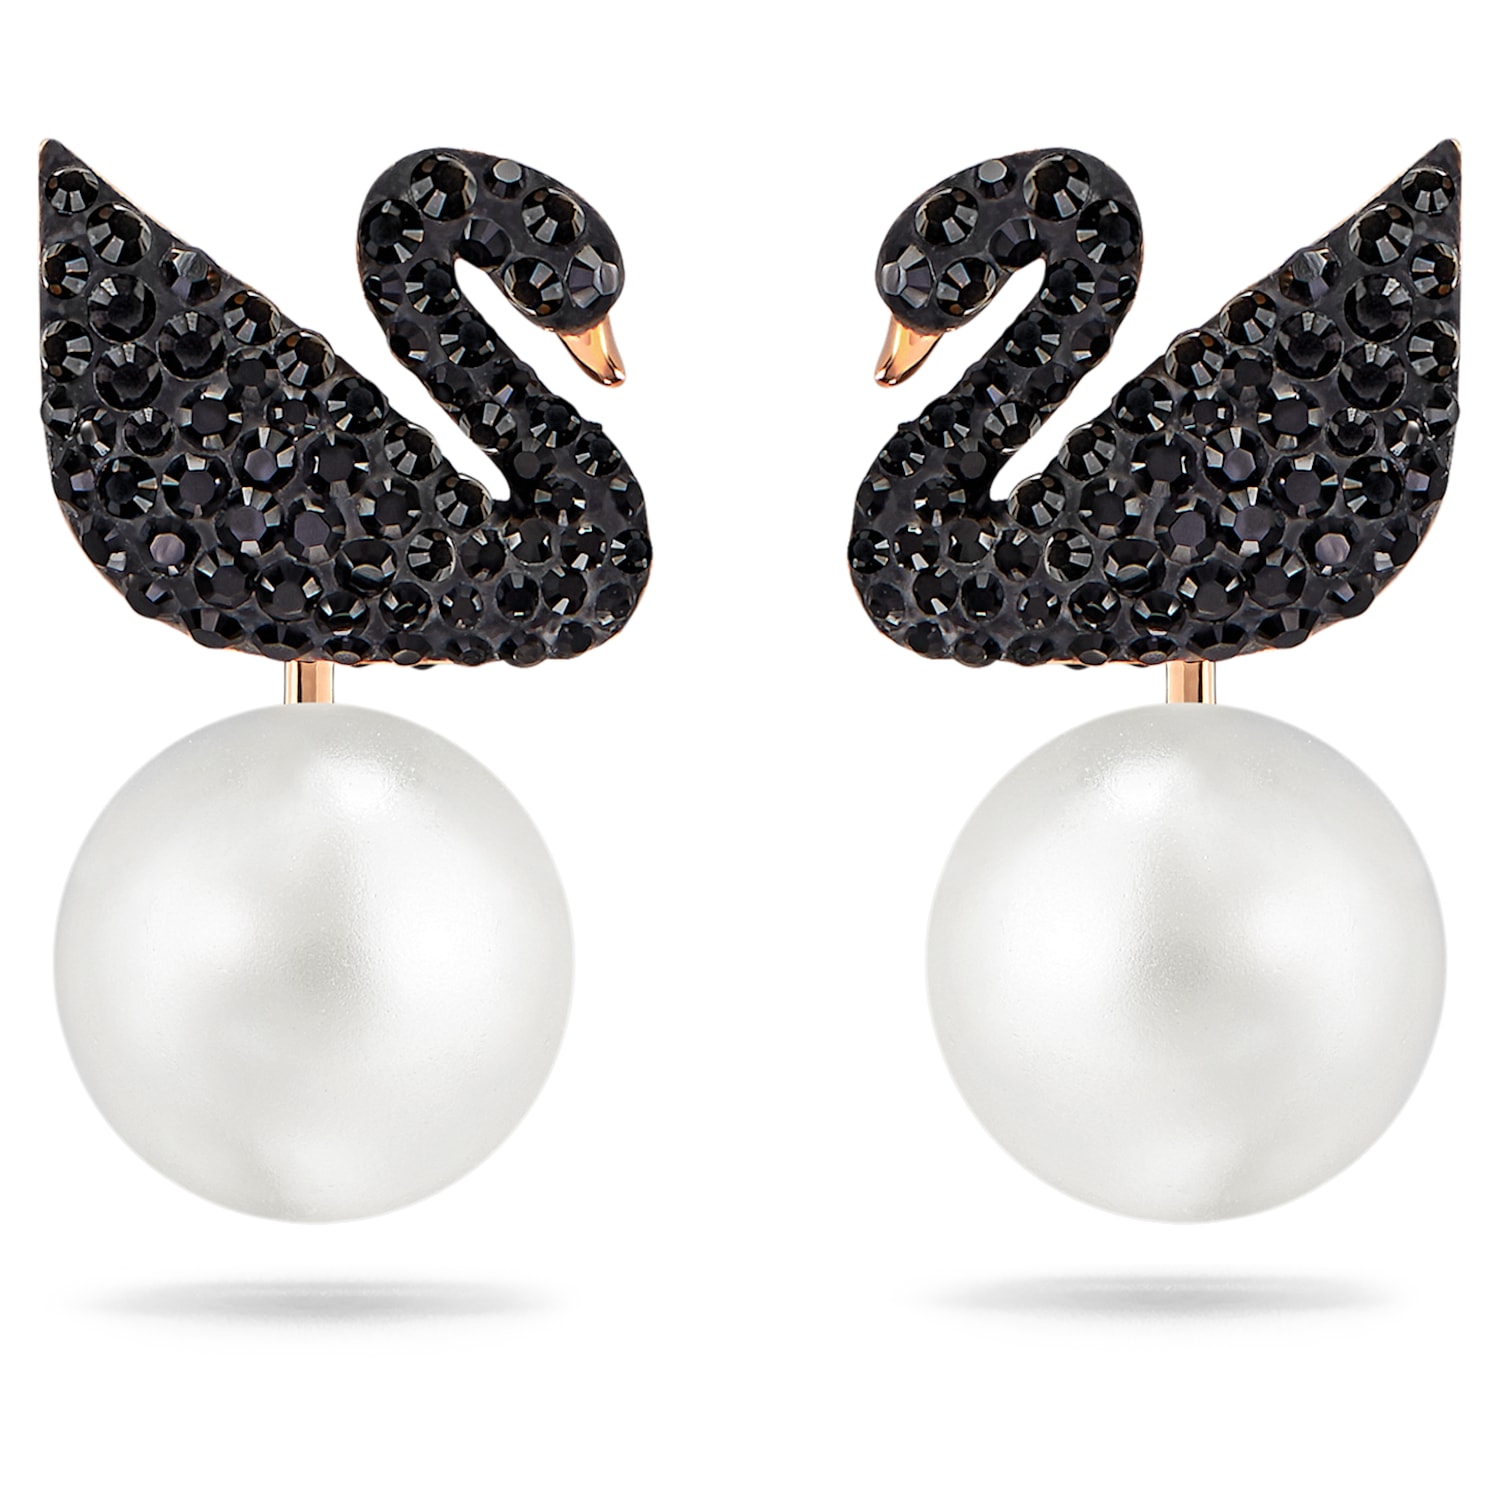 Swan Bracelet Necklace Earrings Set Black and White Full Diamond Counter